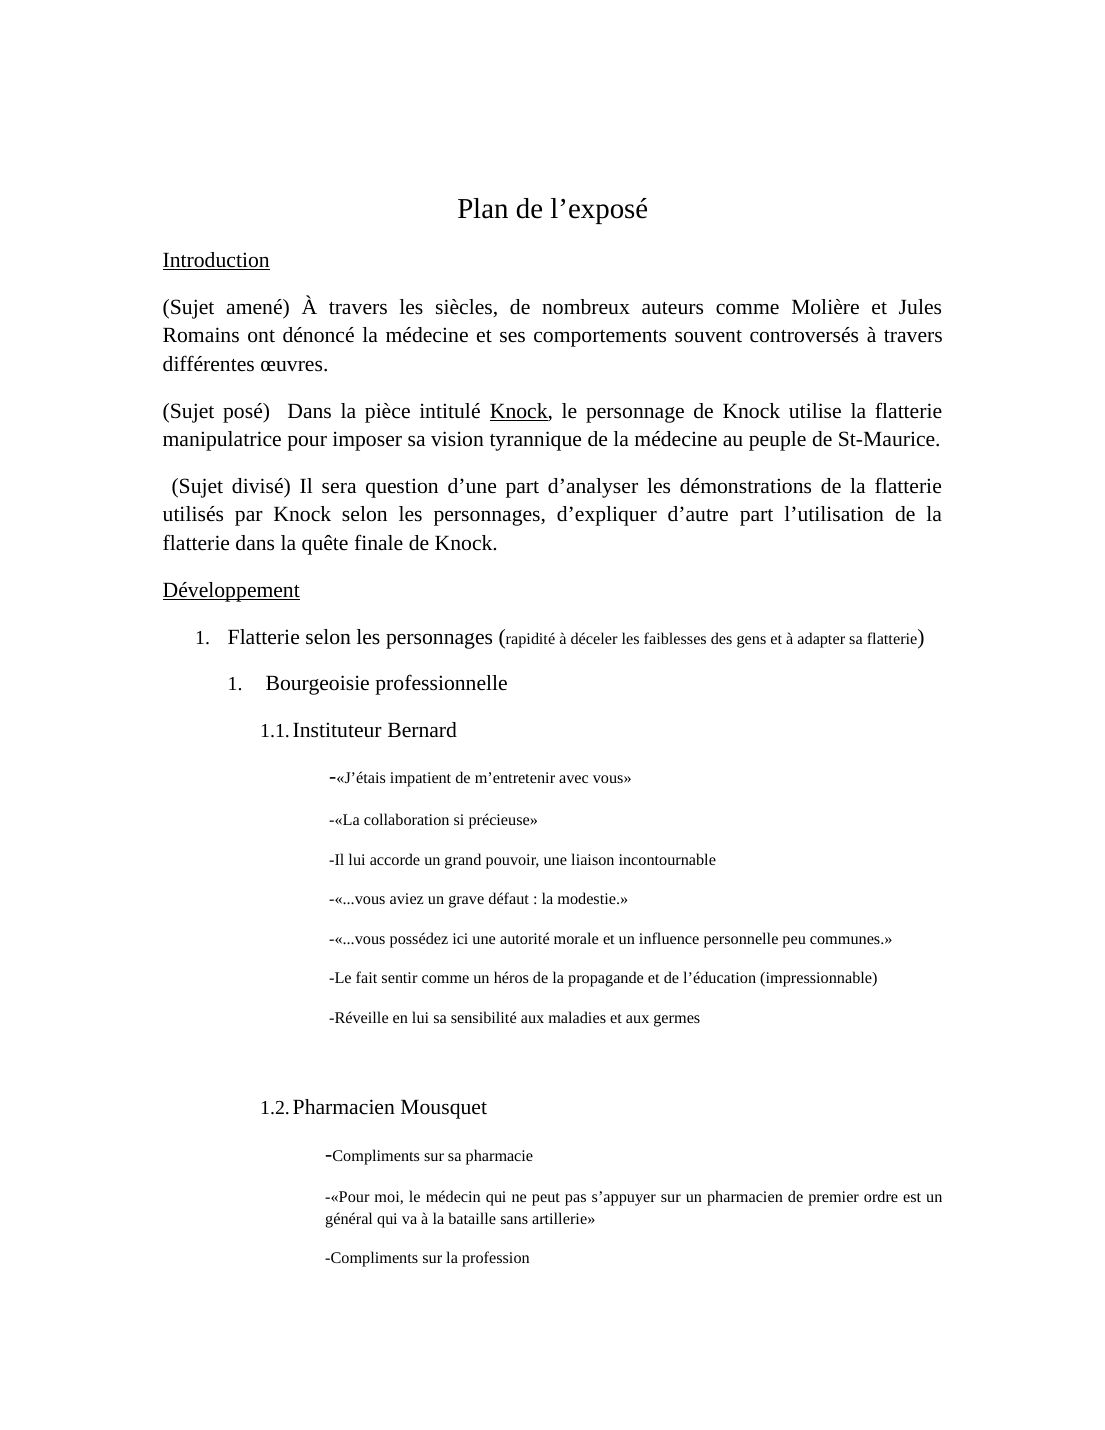 Prévisualisation du document Plan d'exposé oral sur Knock de Jules Romain